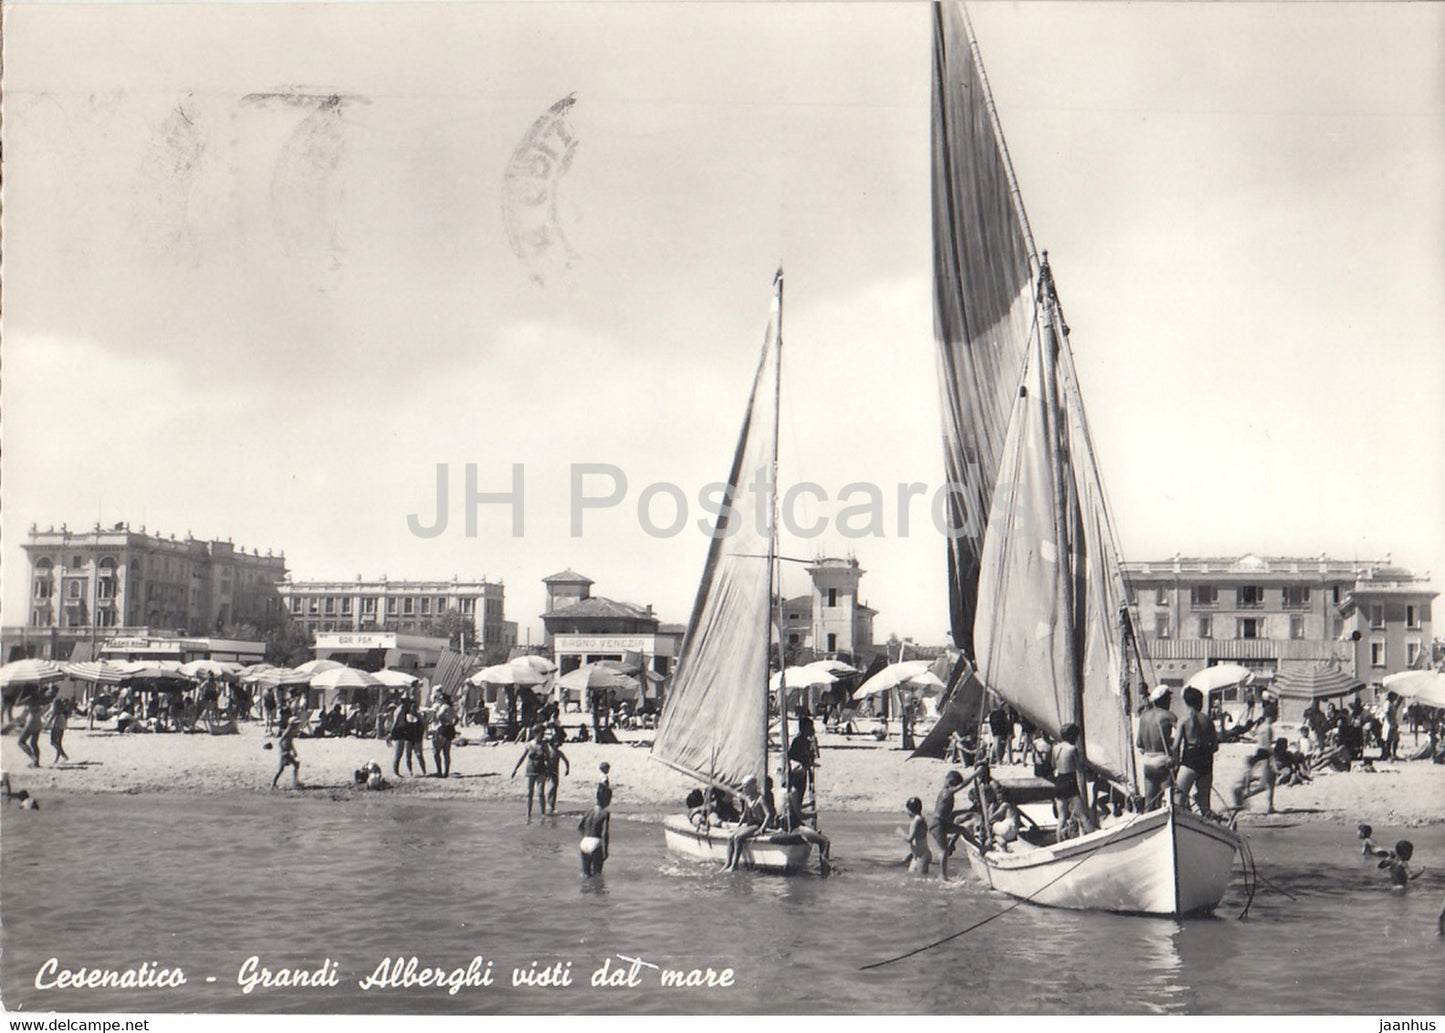 Cesenatico - Grandi Alberghi visti dal mare - Grand Hotels from Sea - sailing boat - old postcard - 1958 - Italy - used - JH Postcards